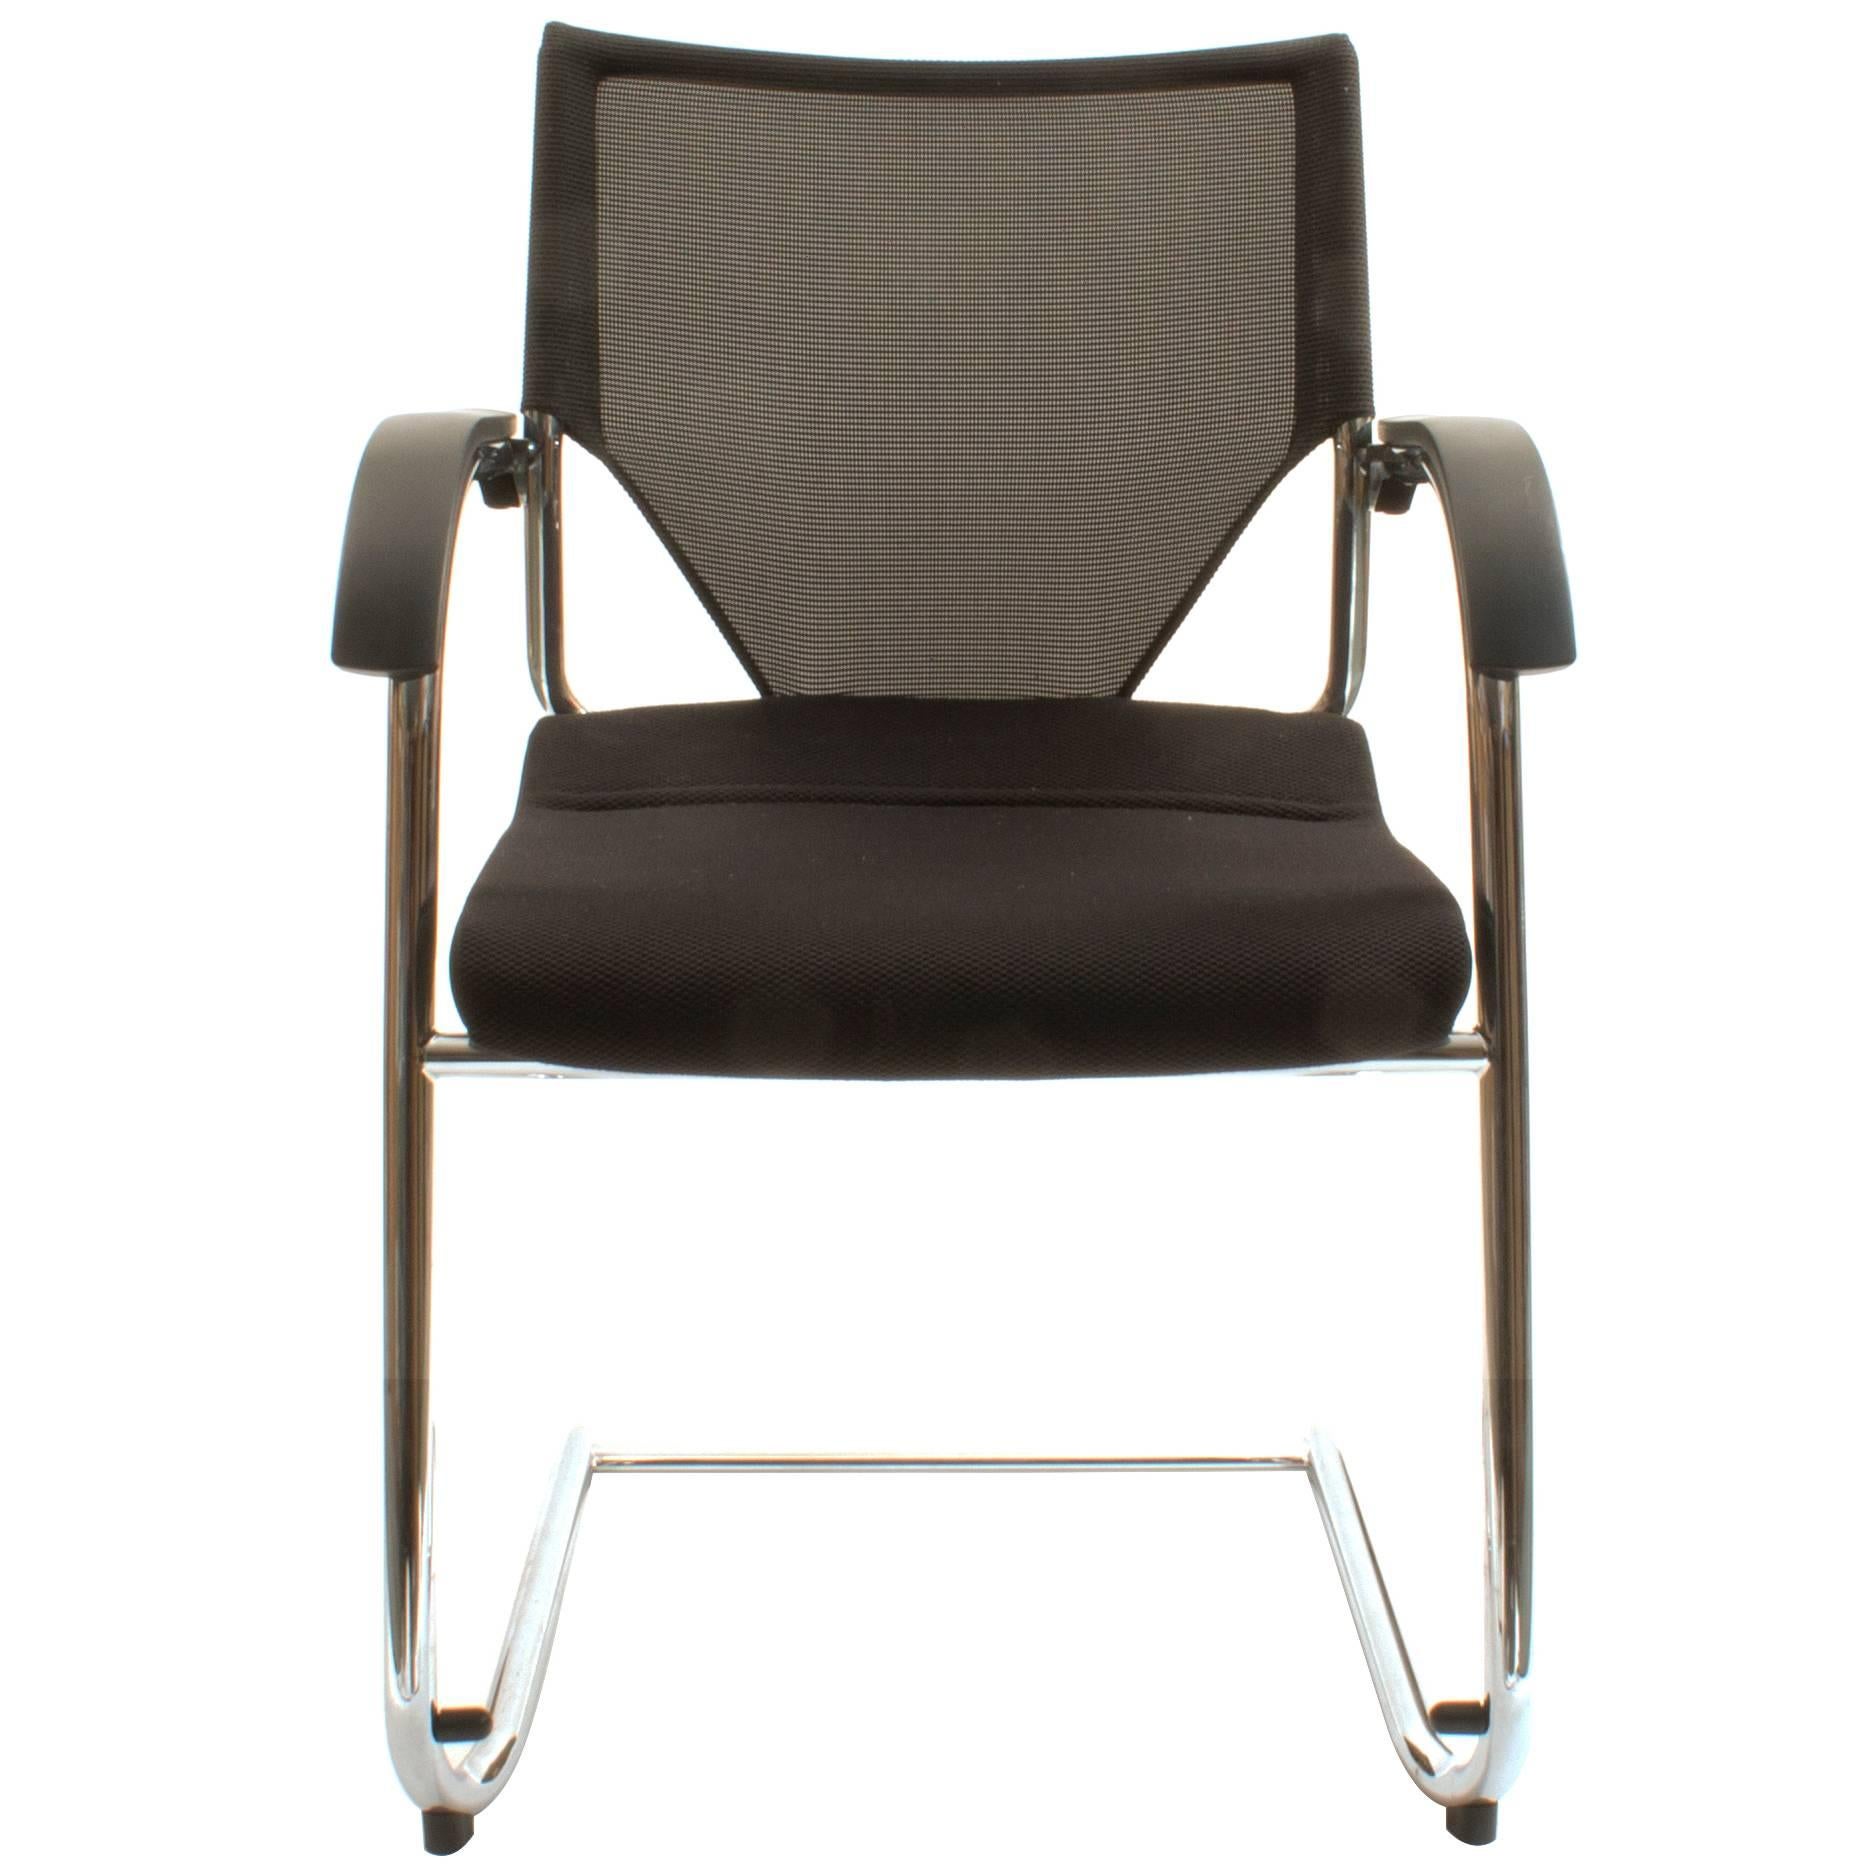 Black Wilkhahn Modus Executive Cantilever Office Armchair For Sale